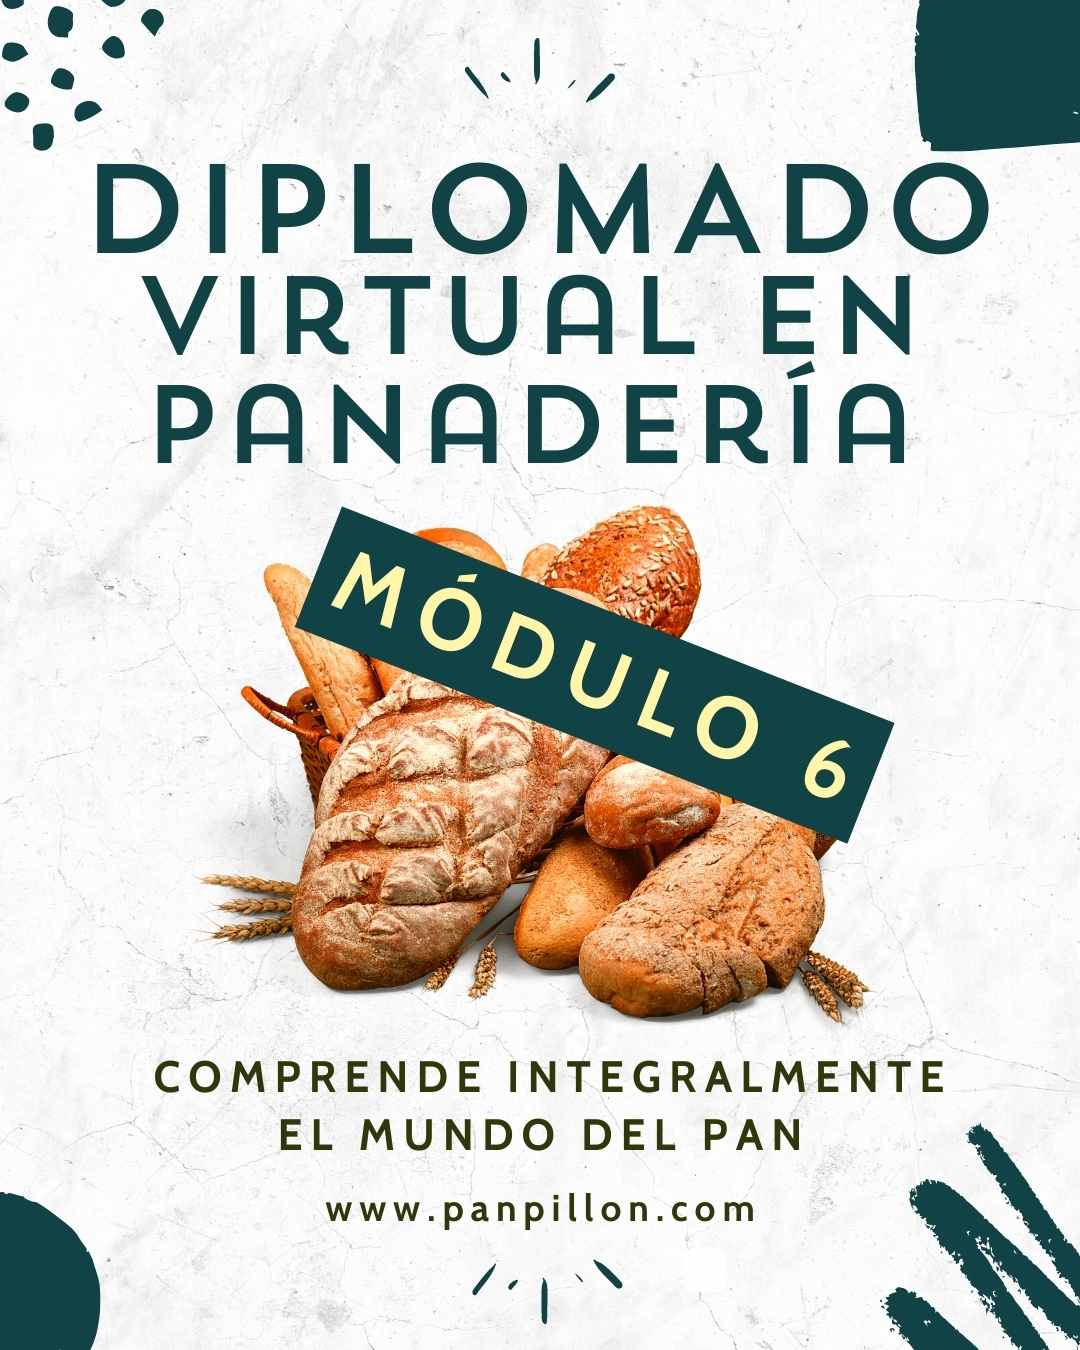 Módulo 6 – Marketing digital (Diplomado virtual en panadería)